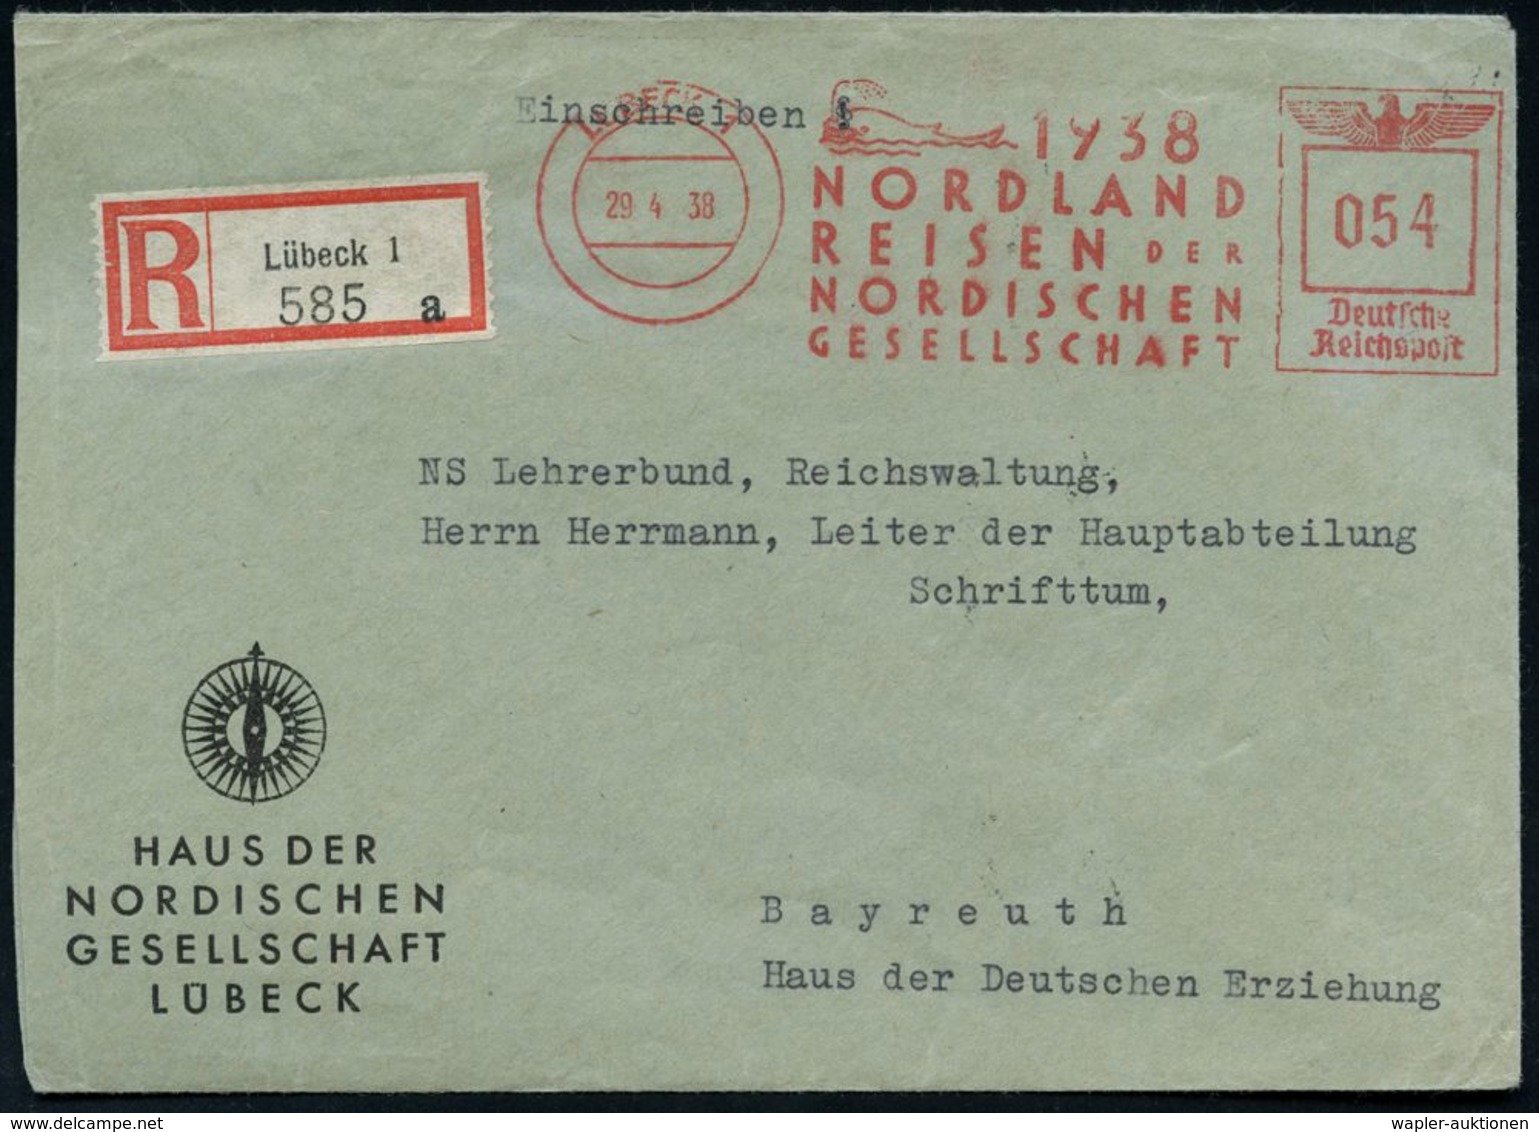 LÜBECK 1/ 1937/ NORDLAND/ REISEN DER/ NORDISCHEN/ GESELLSCHAFT 1938 (29.4.) Sehr Seltener AFS 054 Pf. = Wal (bläst Wasse - Arktis Expeditionen